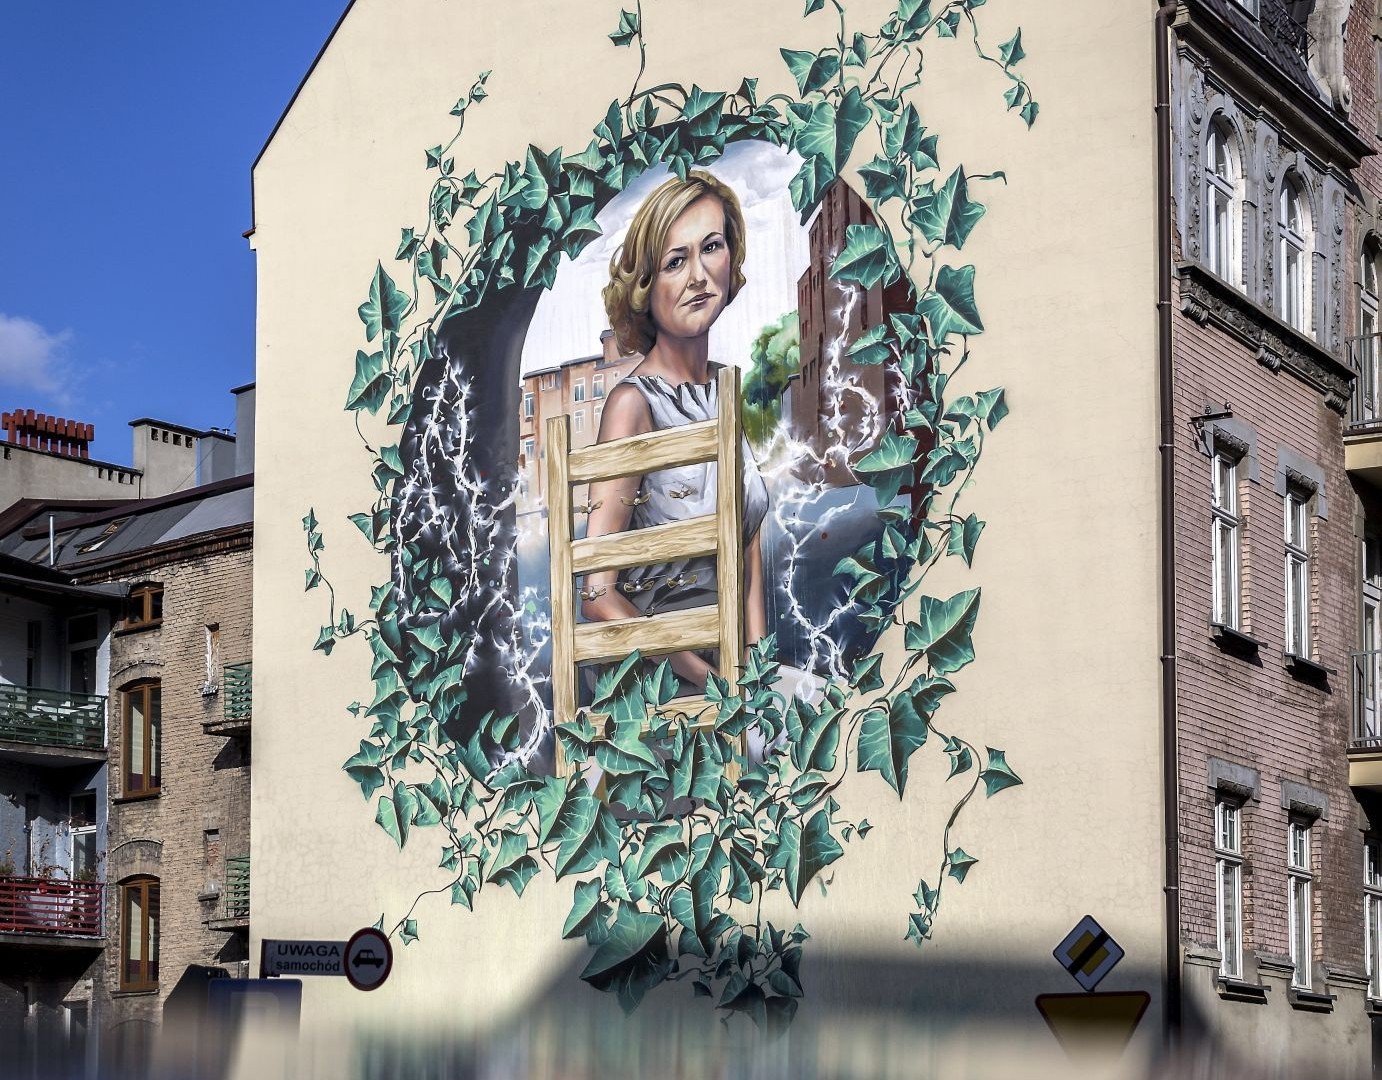 Nowy mural w centrum Katowic. Wspólny projekt „Gazety Wyborczej” i miasta Katowice upamiętniający Krystynę Bochenek